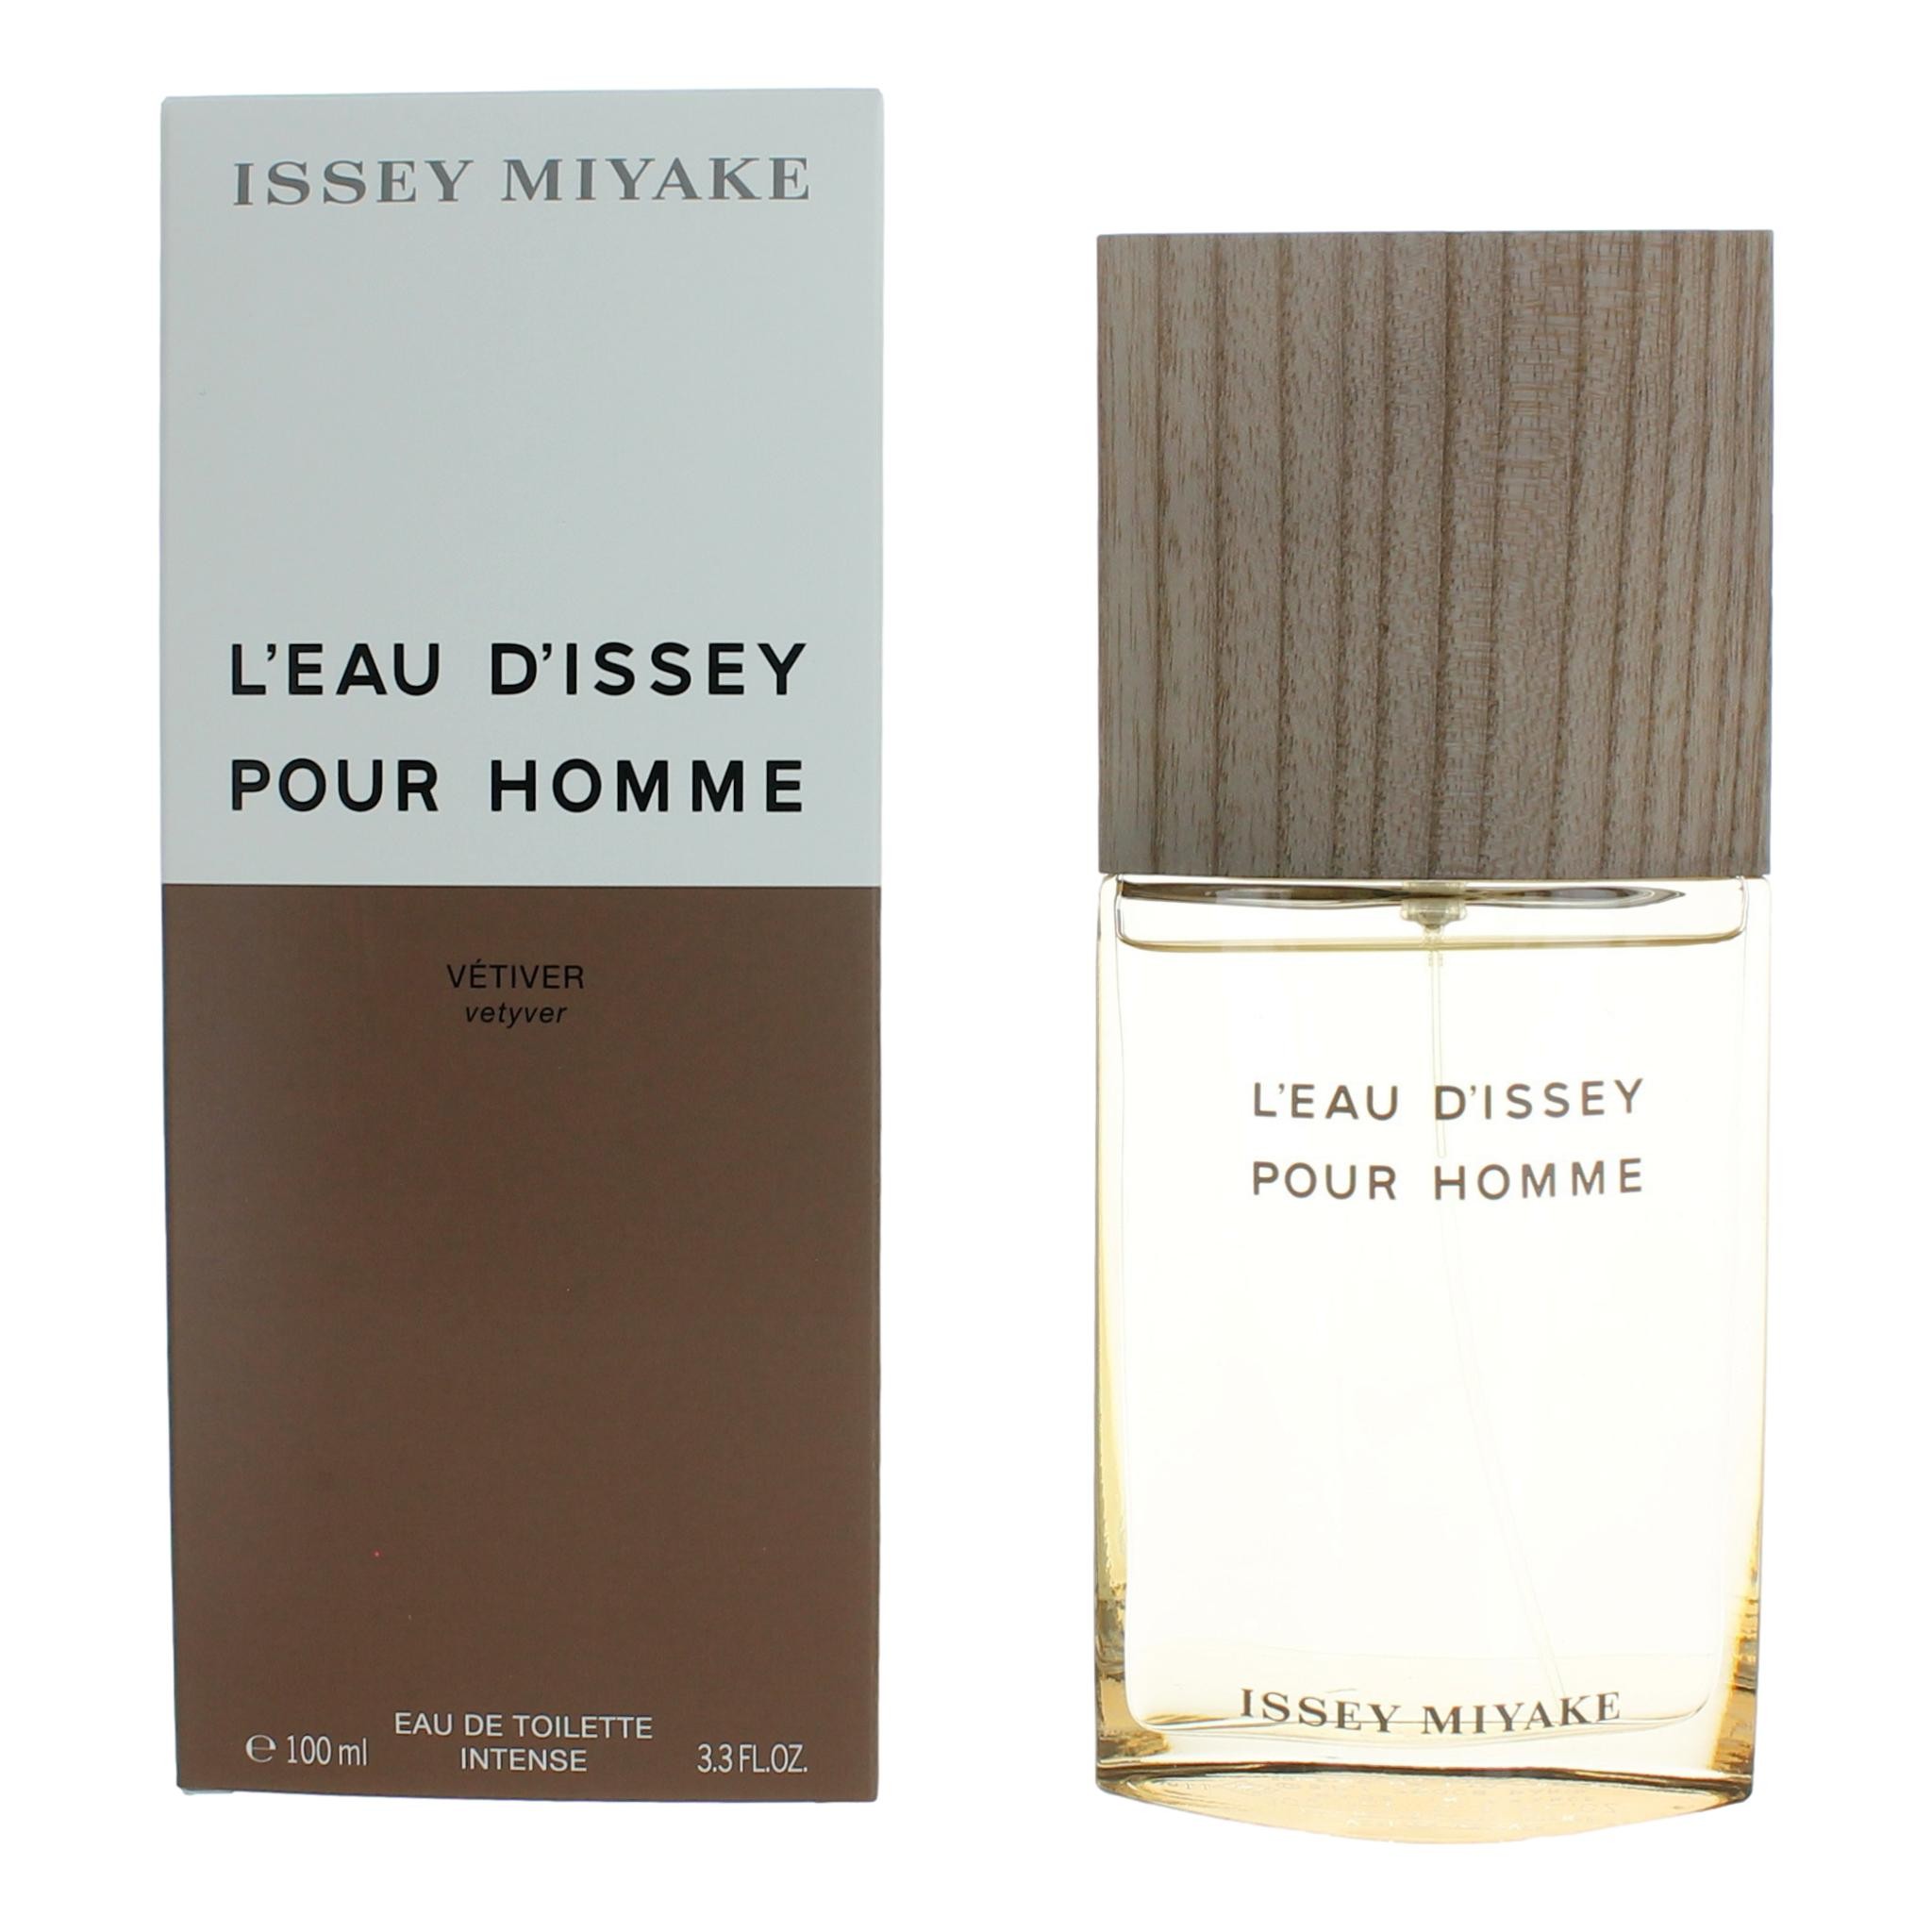 L'Eau D'Issey Pour Homme Vetiver by Issey Miyake 3.3 oz Eau De Toilette Intense Spray for Men